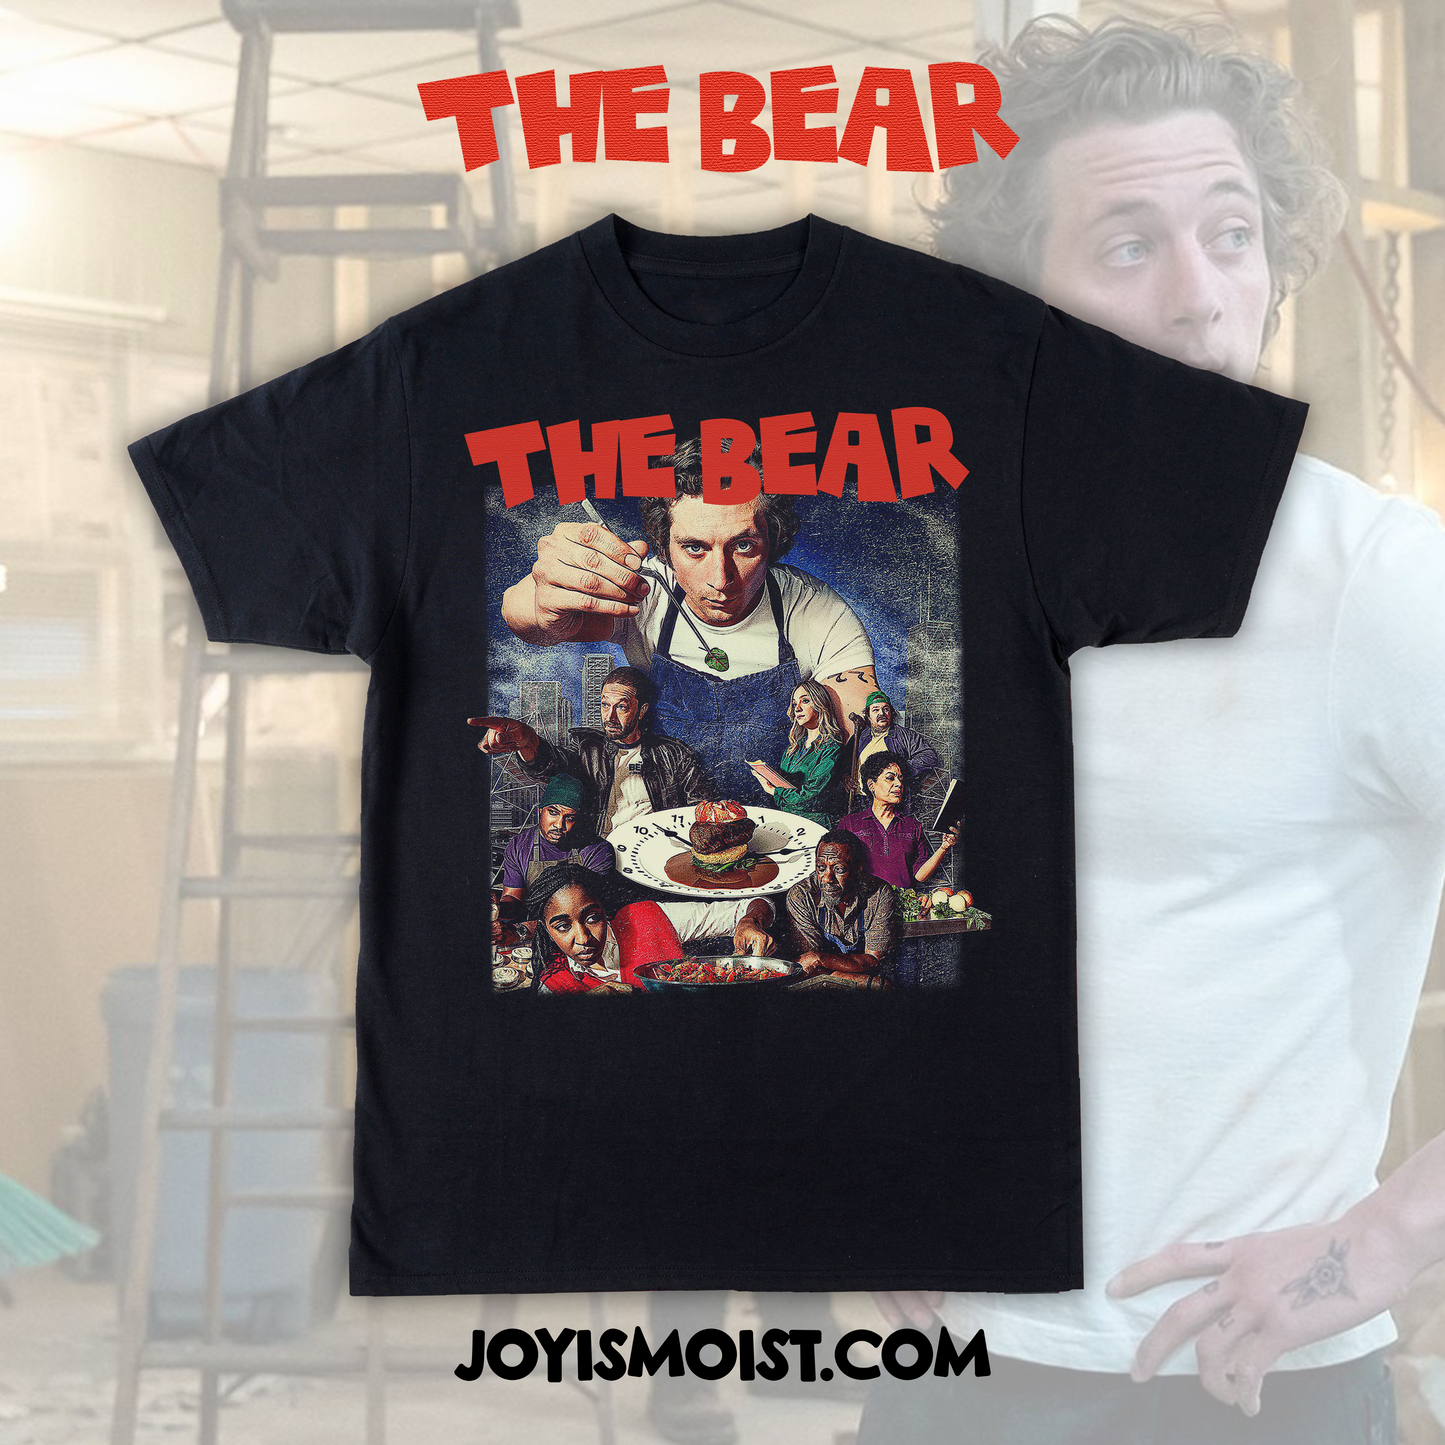 The Bear Tshirt